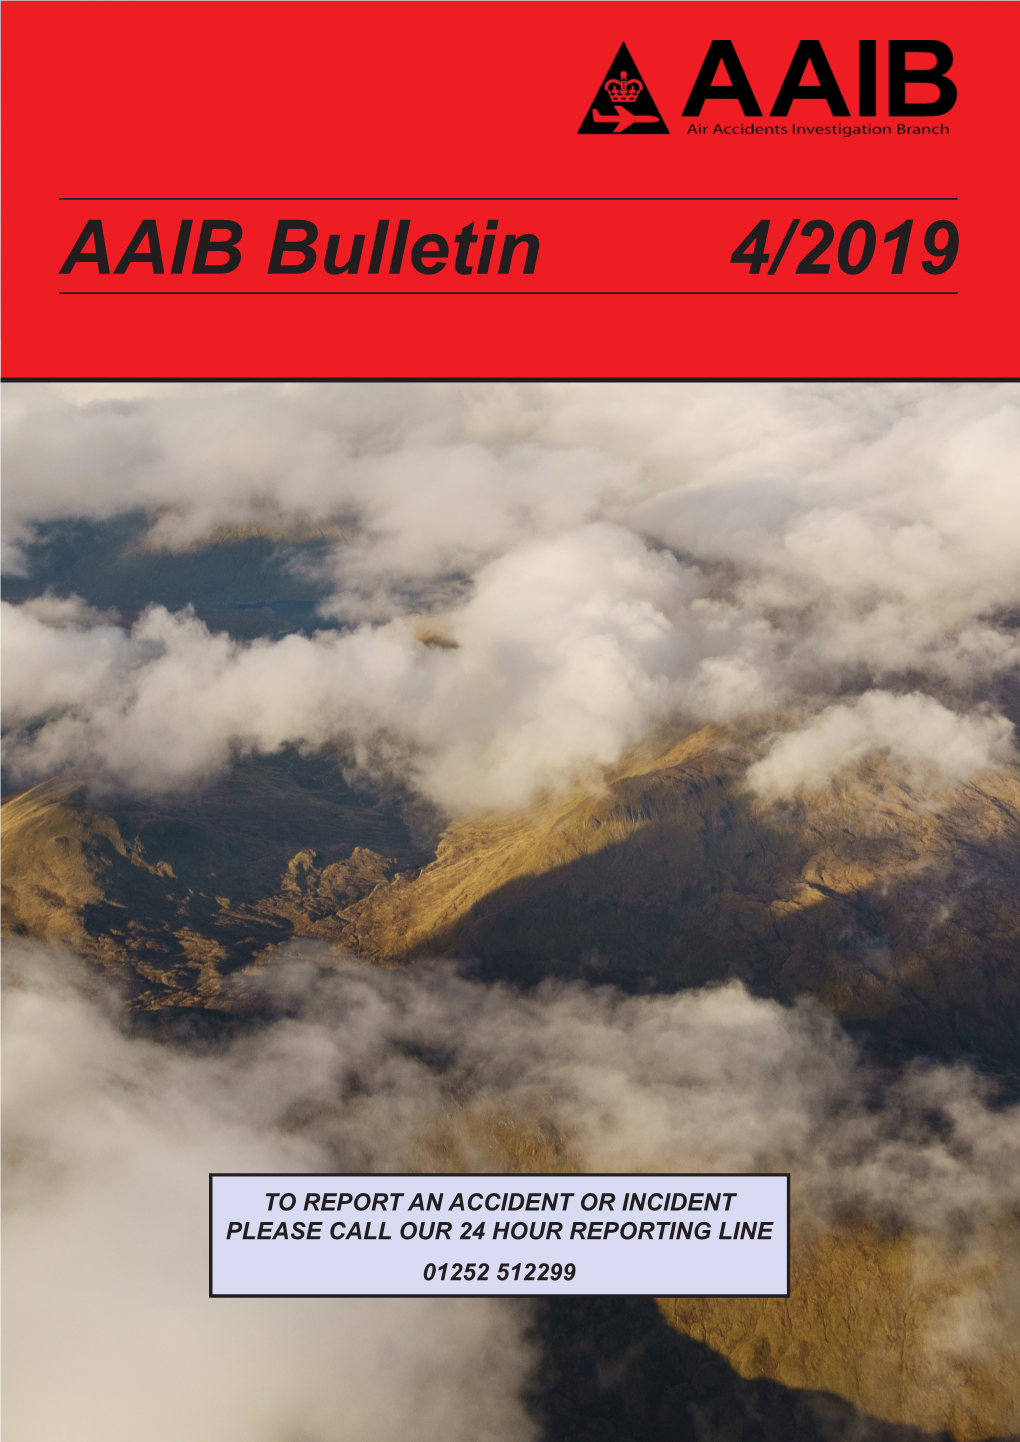 AAIB Bulletin 4/2019